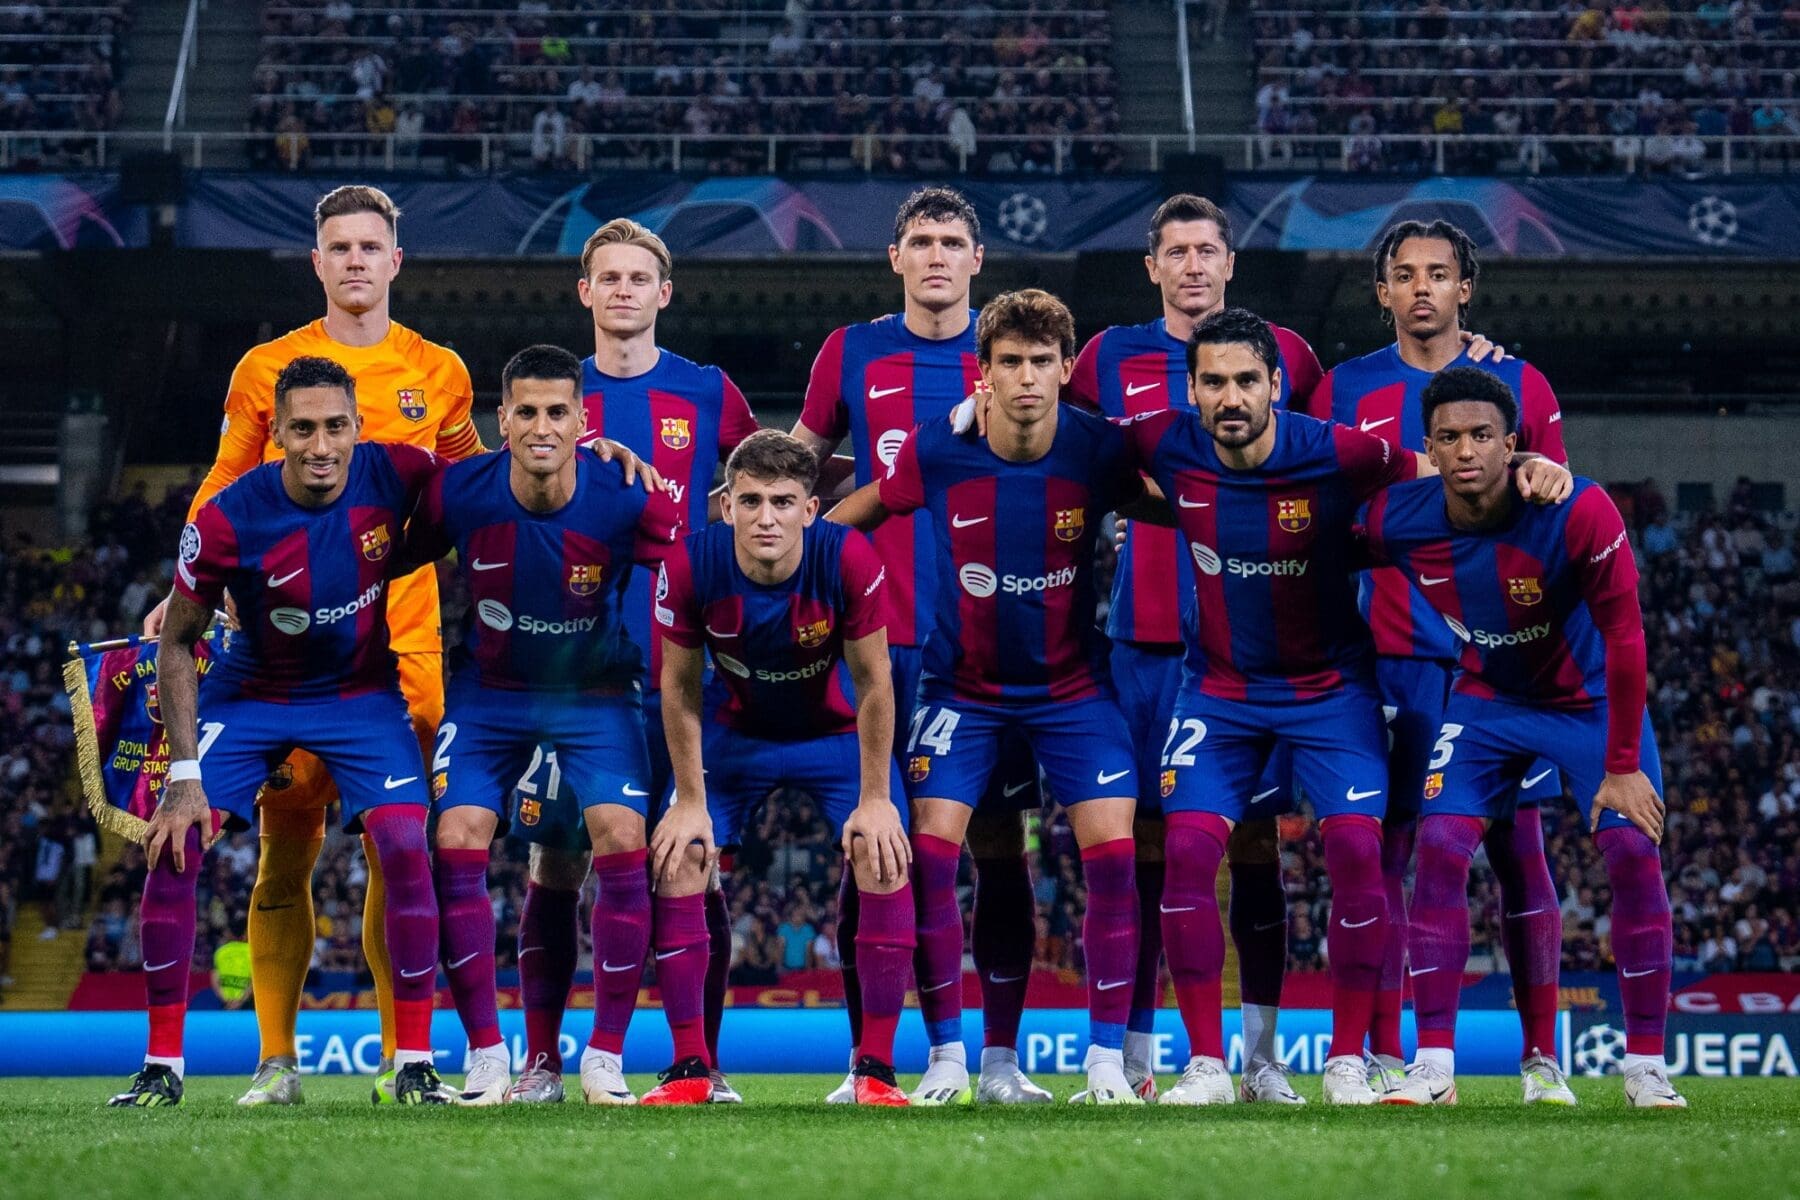 صورة لتشكيل فريق برشلونة في أخر مباراته- المصدر صفحة فريق برشلونة على موقع إكس